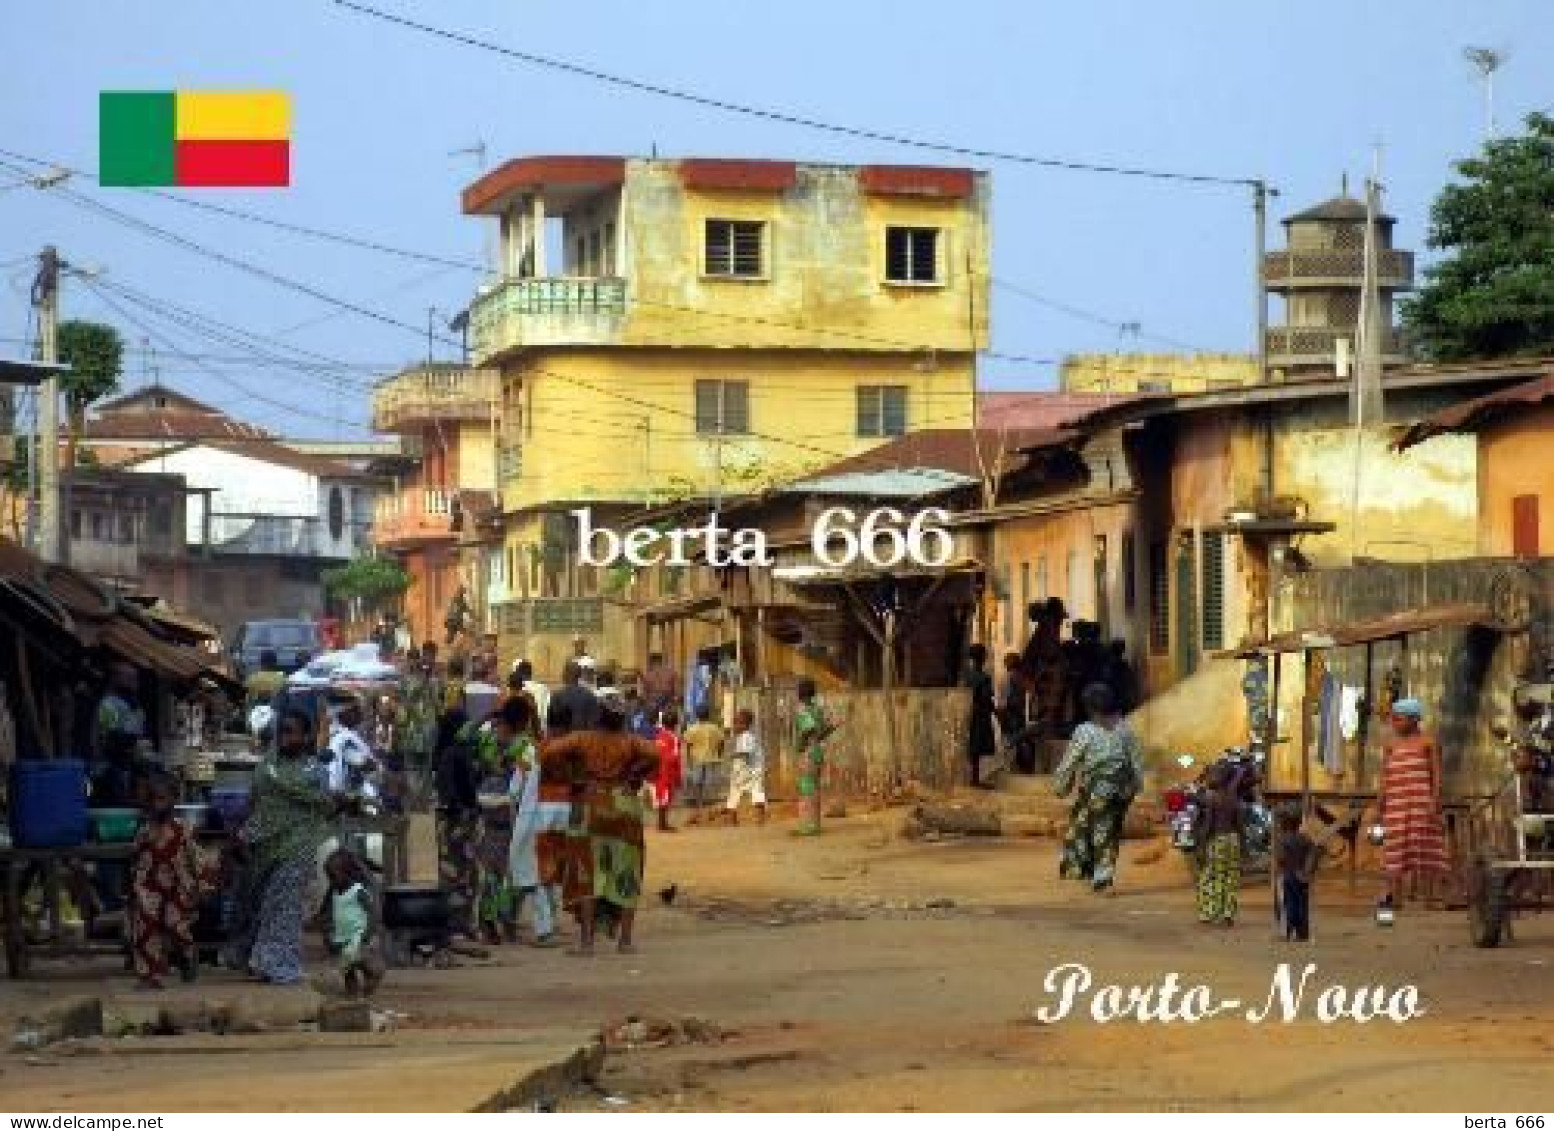 Benin Porto Novo Street Scene New Postcard - Benin